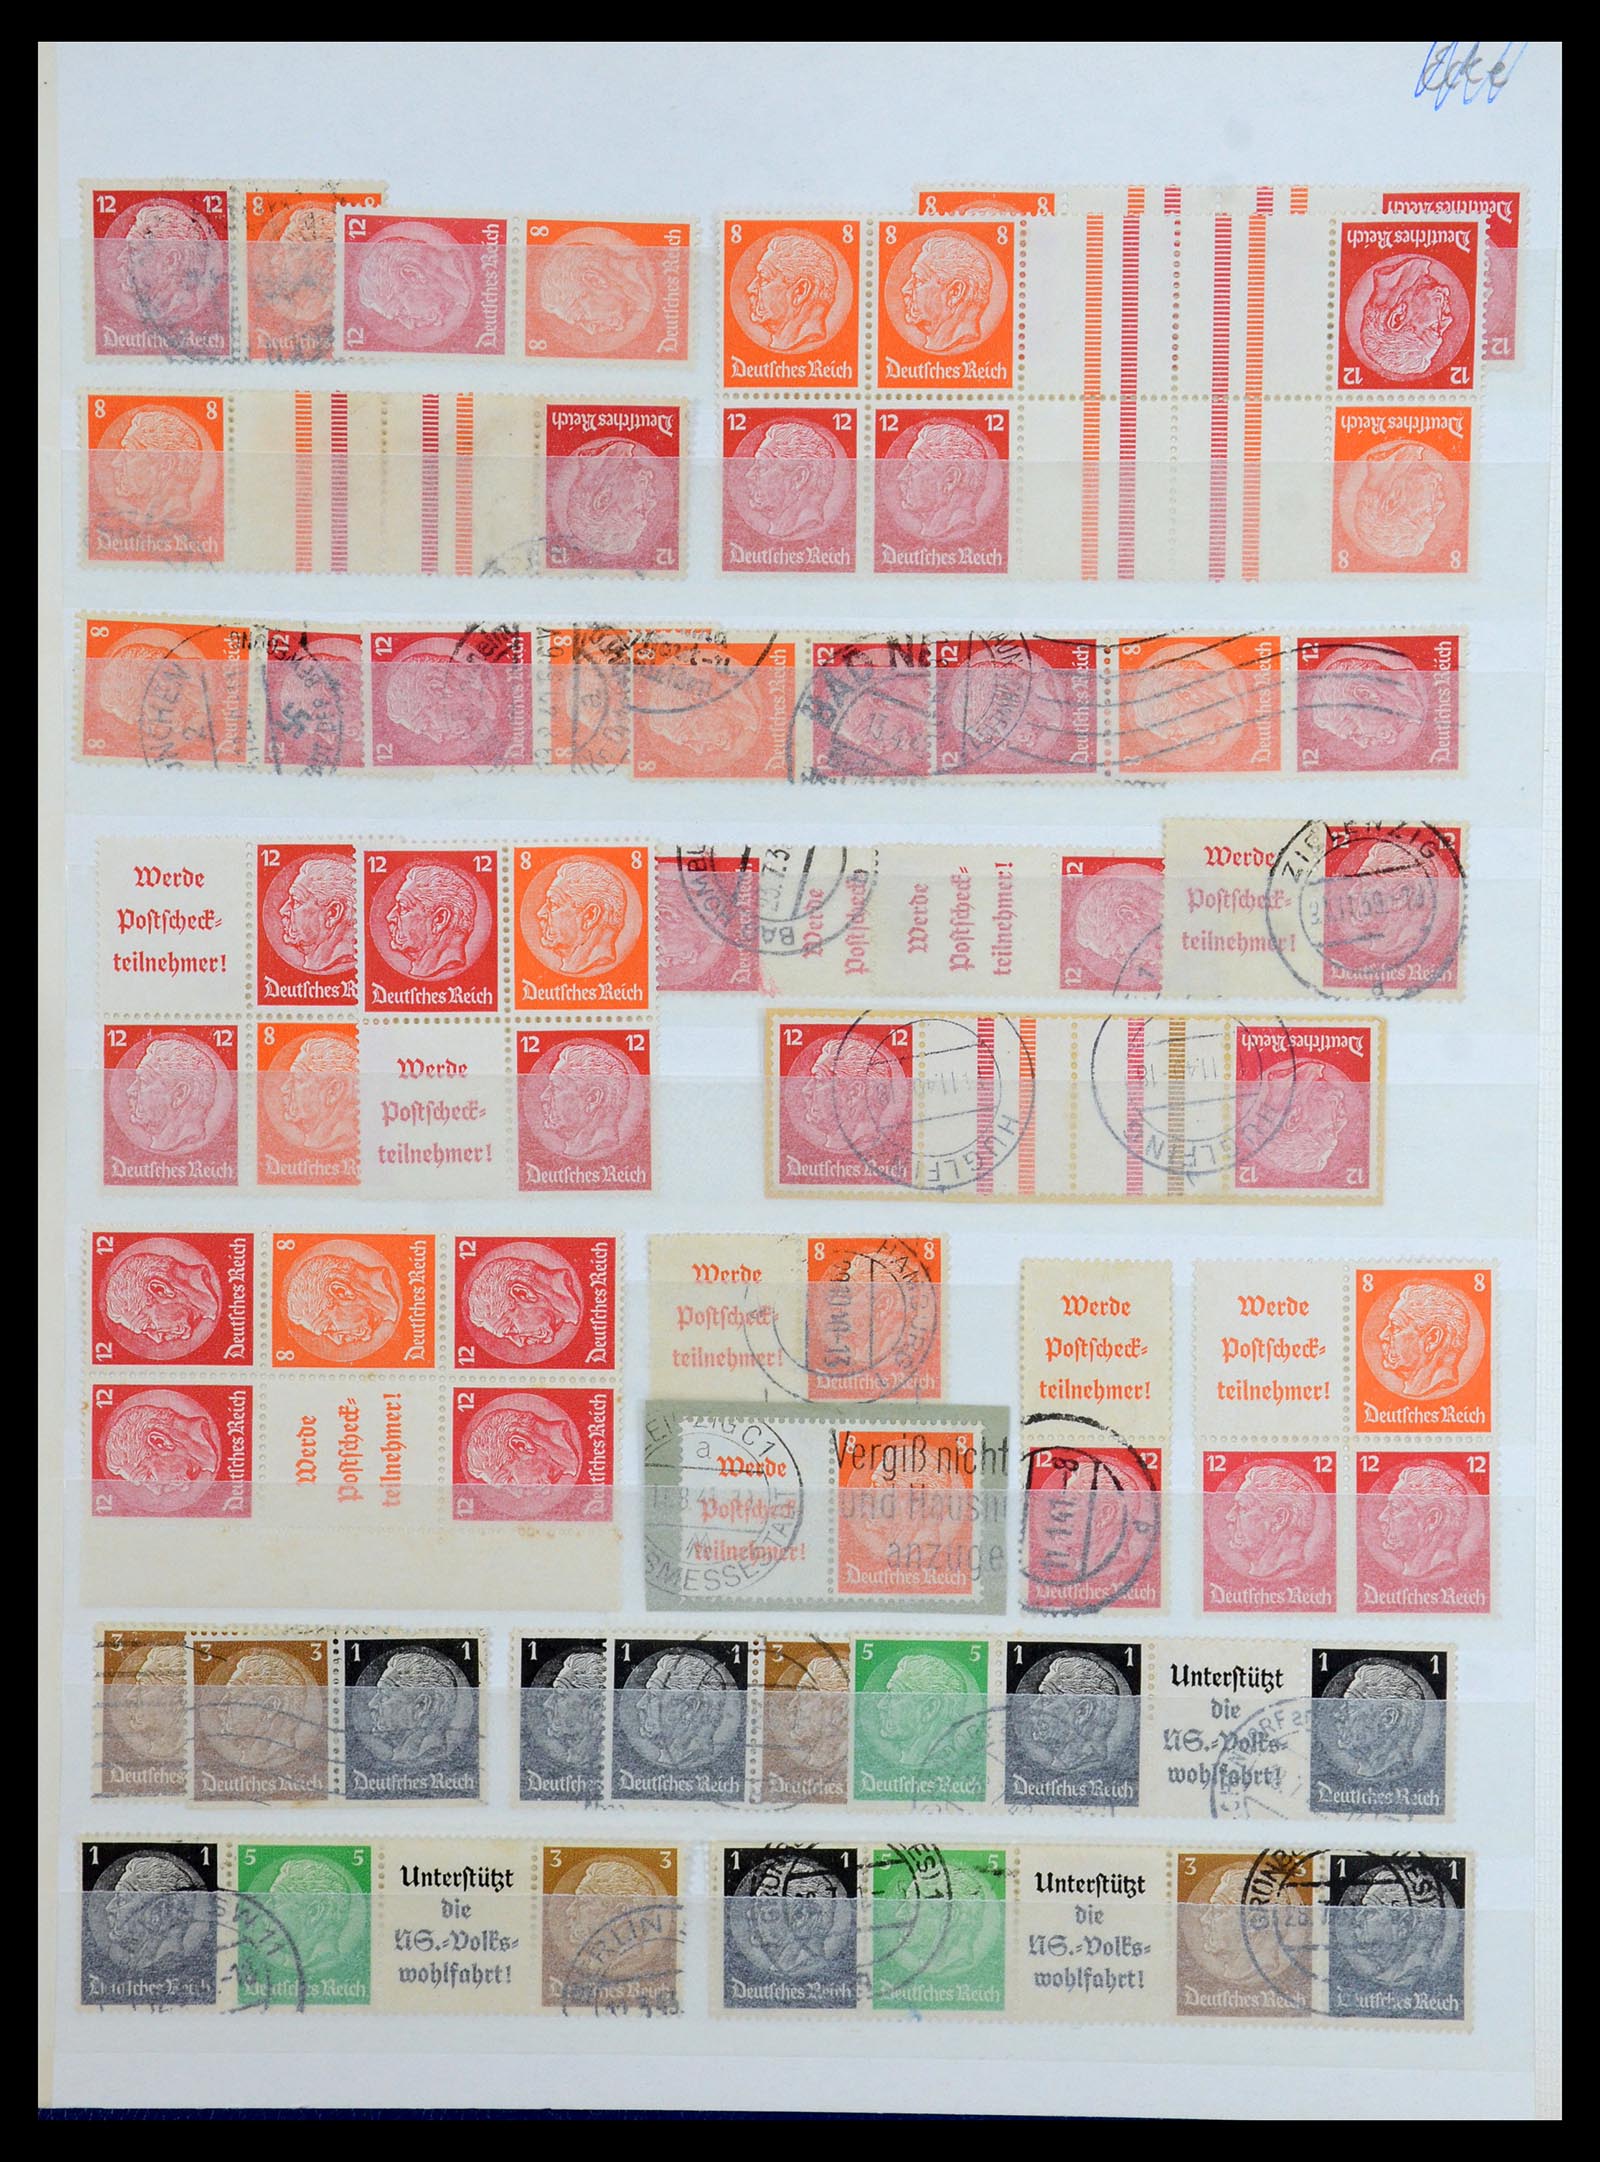 36370 014 - Postzegelverzameling 36370 Duitsland combinaties 1910-1980.